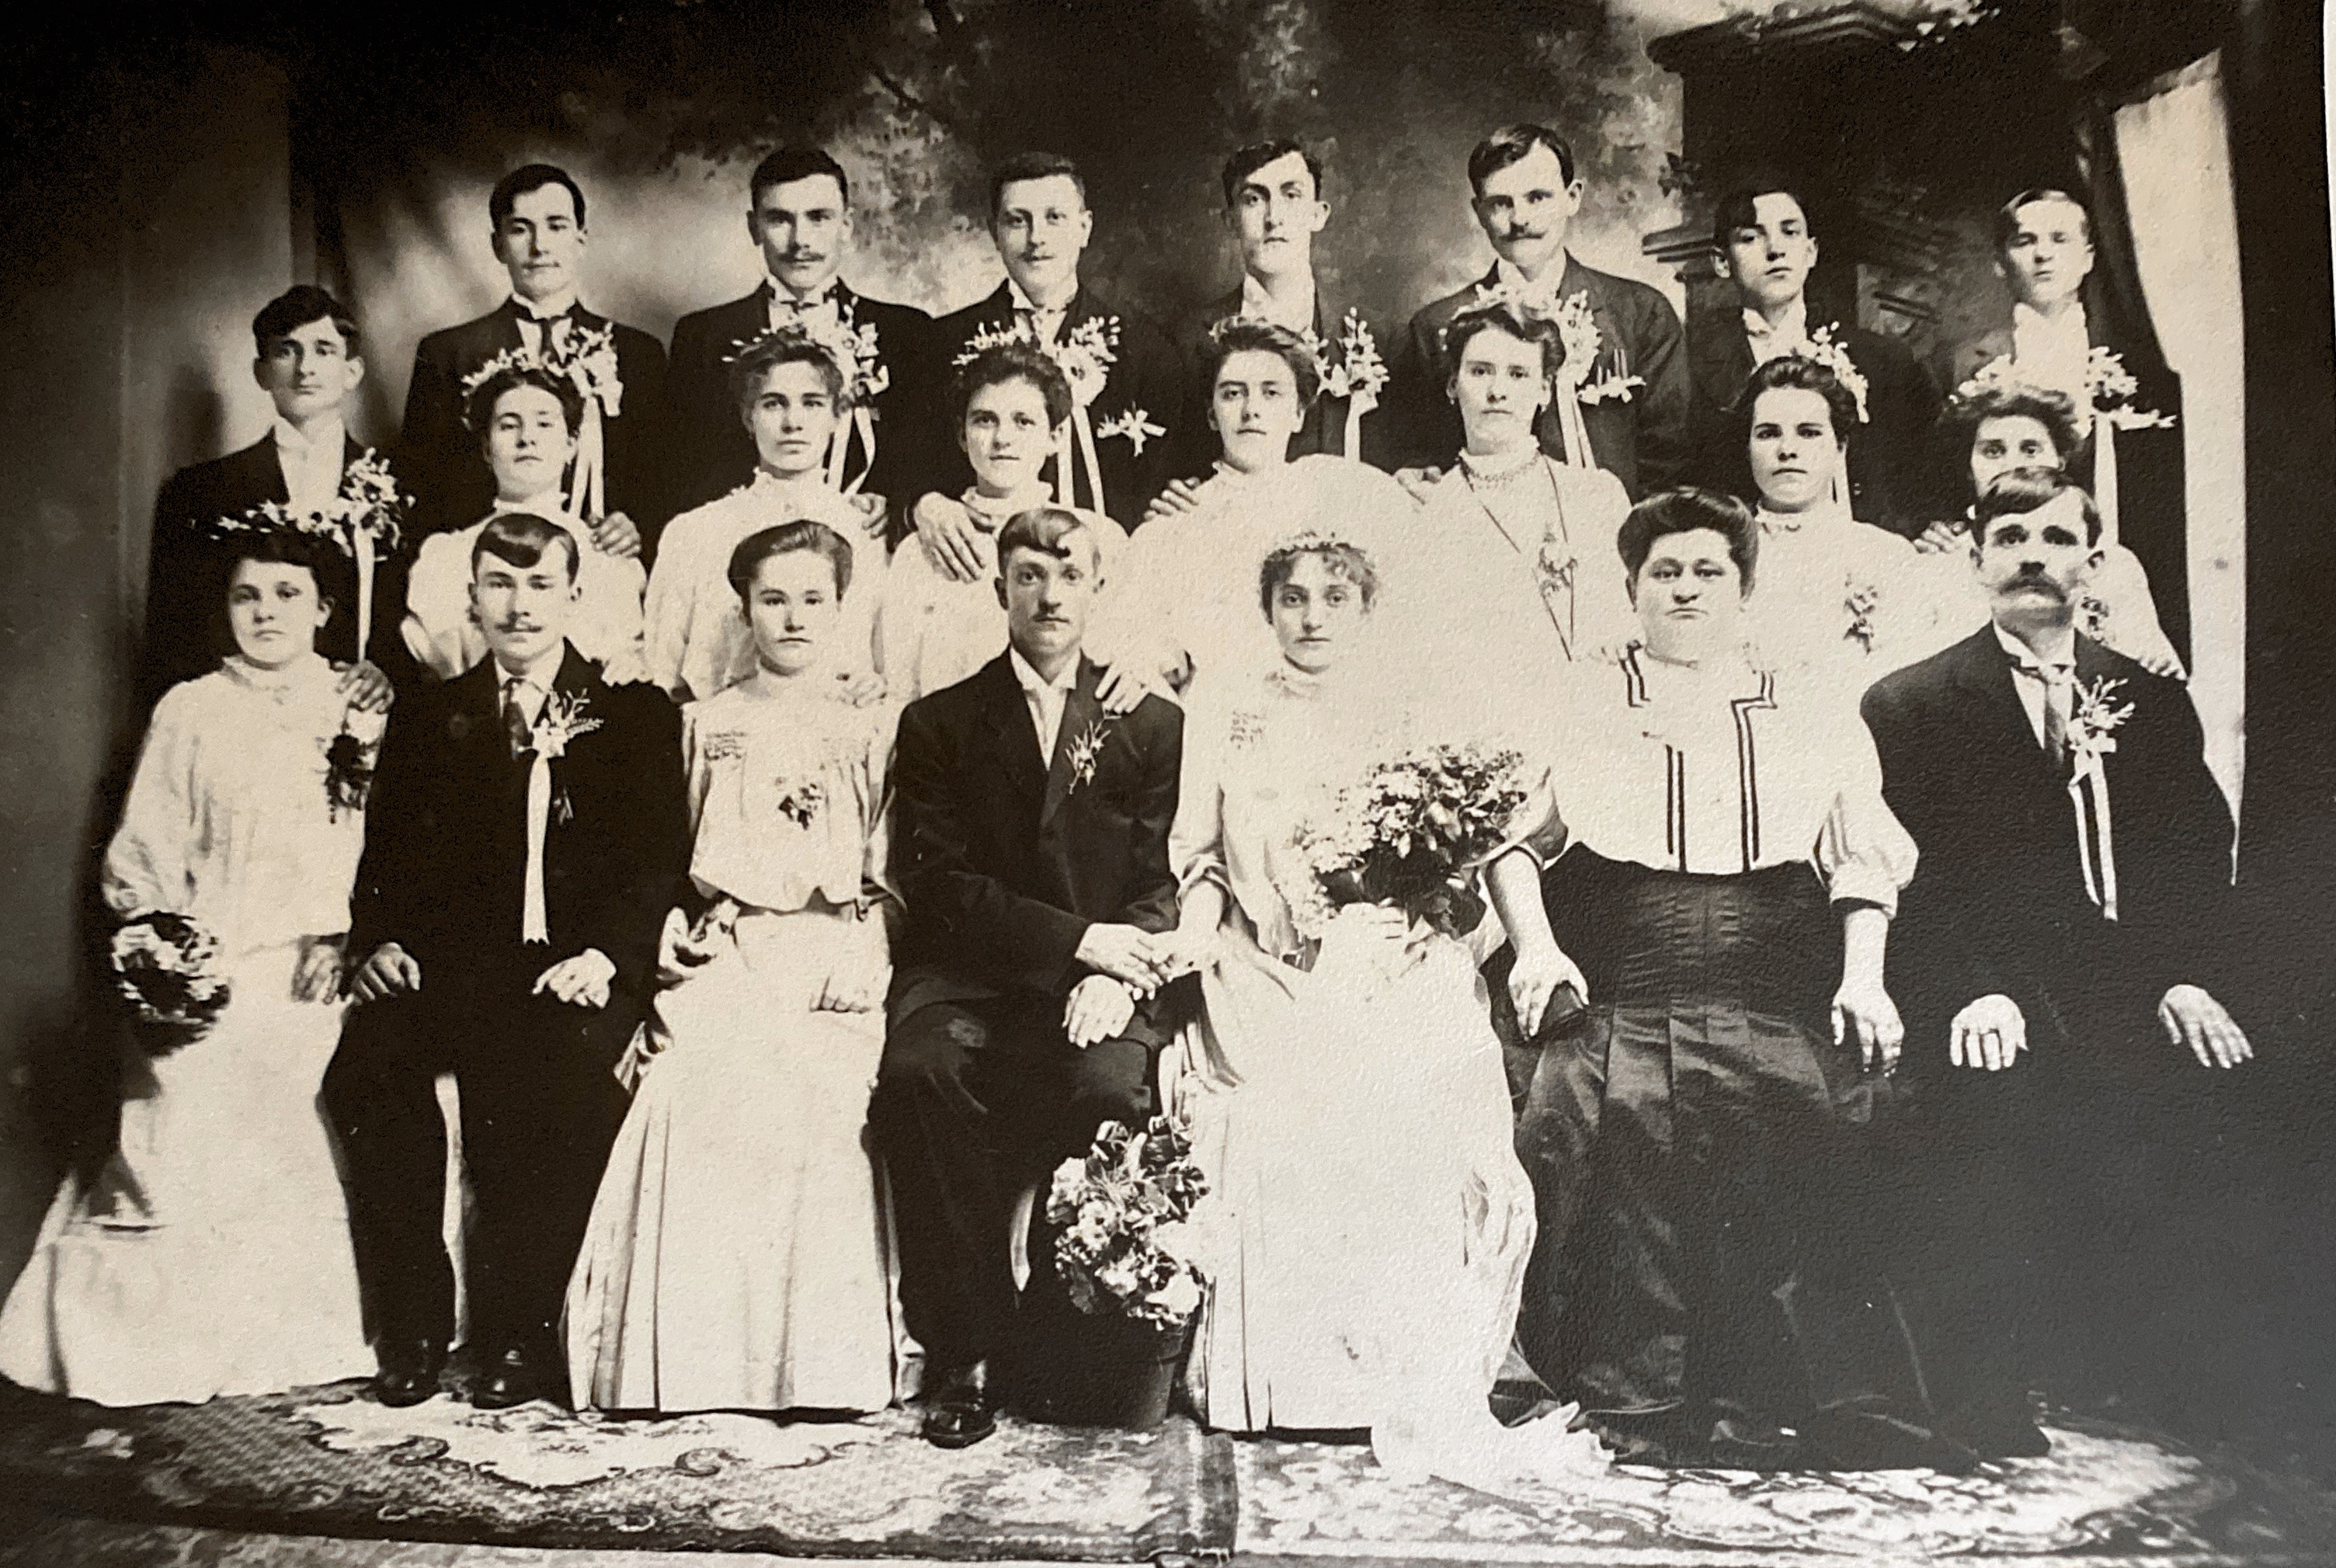 Skerlak Wedding 1907 Stephen Skerlak - Mary Somonek